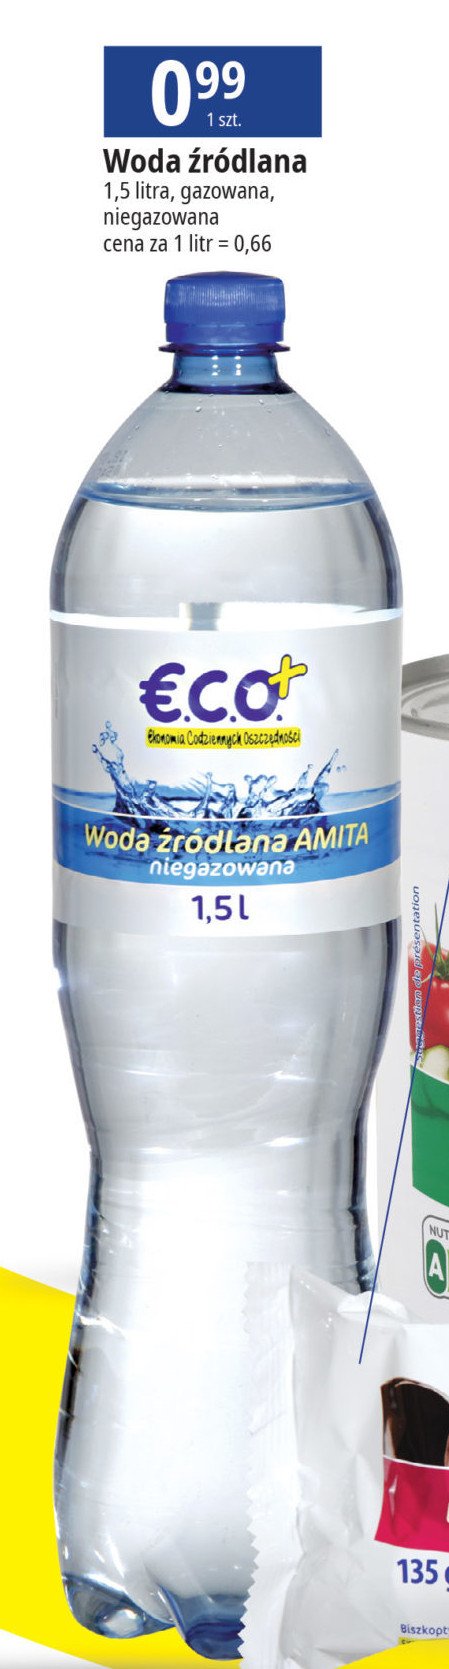 Woda niegazowana Eco+ promocja